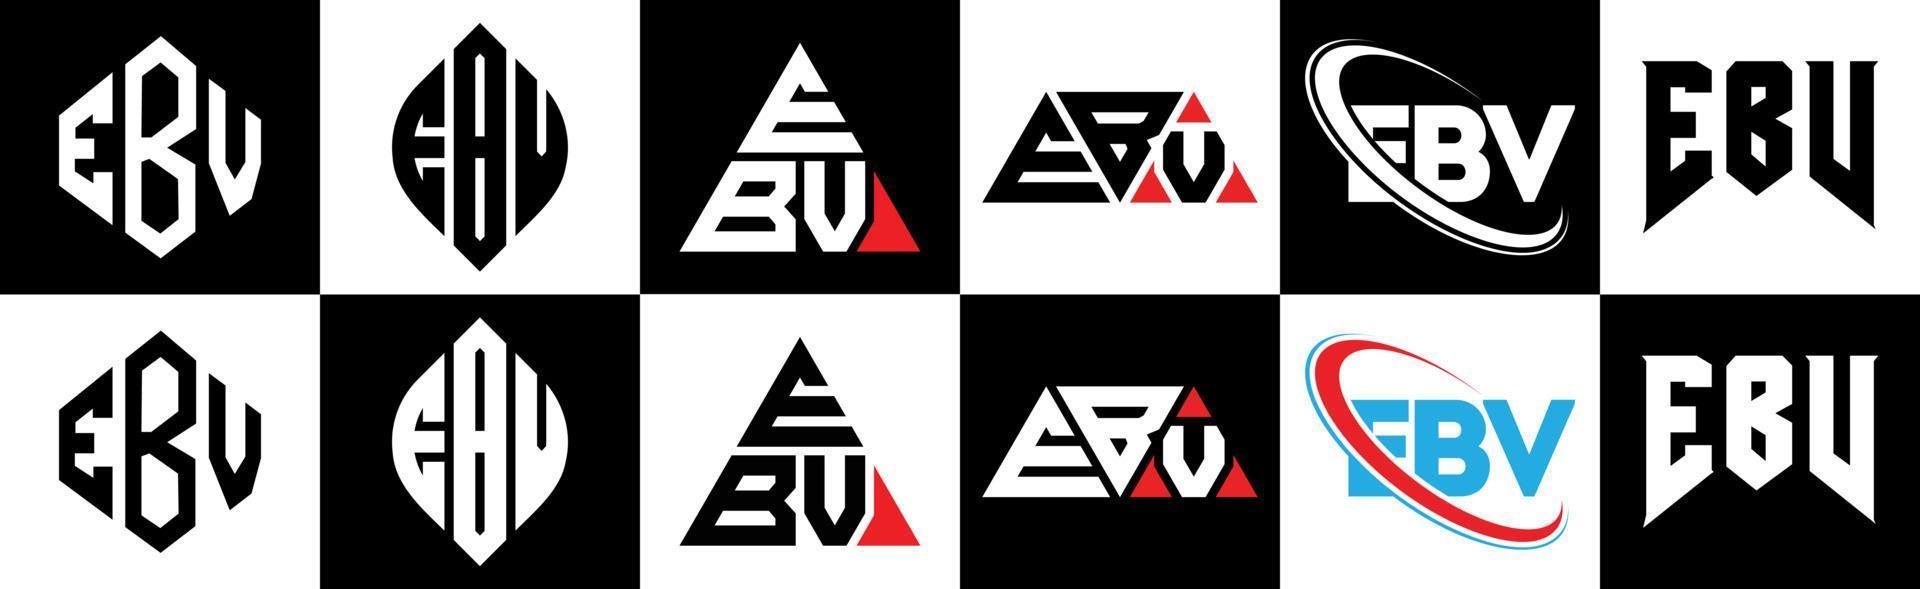 création de logo de lettre ebv en six styles. polygone ebv, cercle, triangle, hexagone, style plat et simple avec logo de lettre de variation de couleur noir et blanc dans un plan de travail. logo ebv minimaliste et classique vecteur